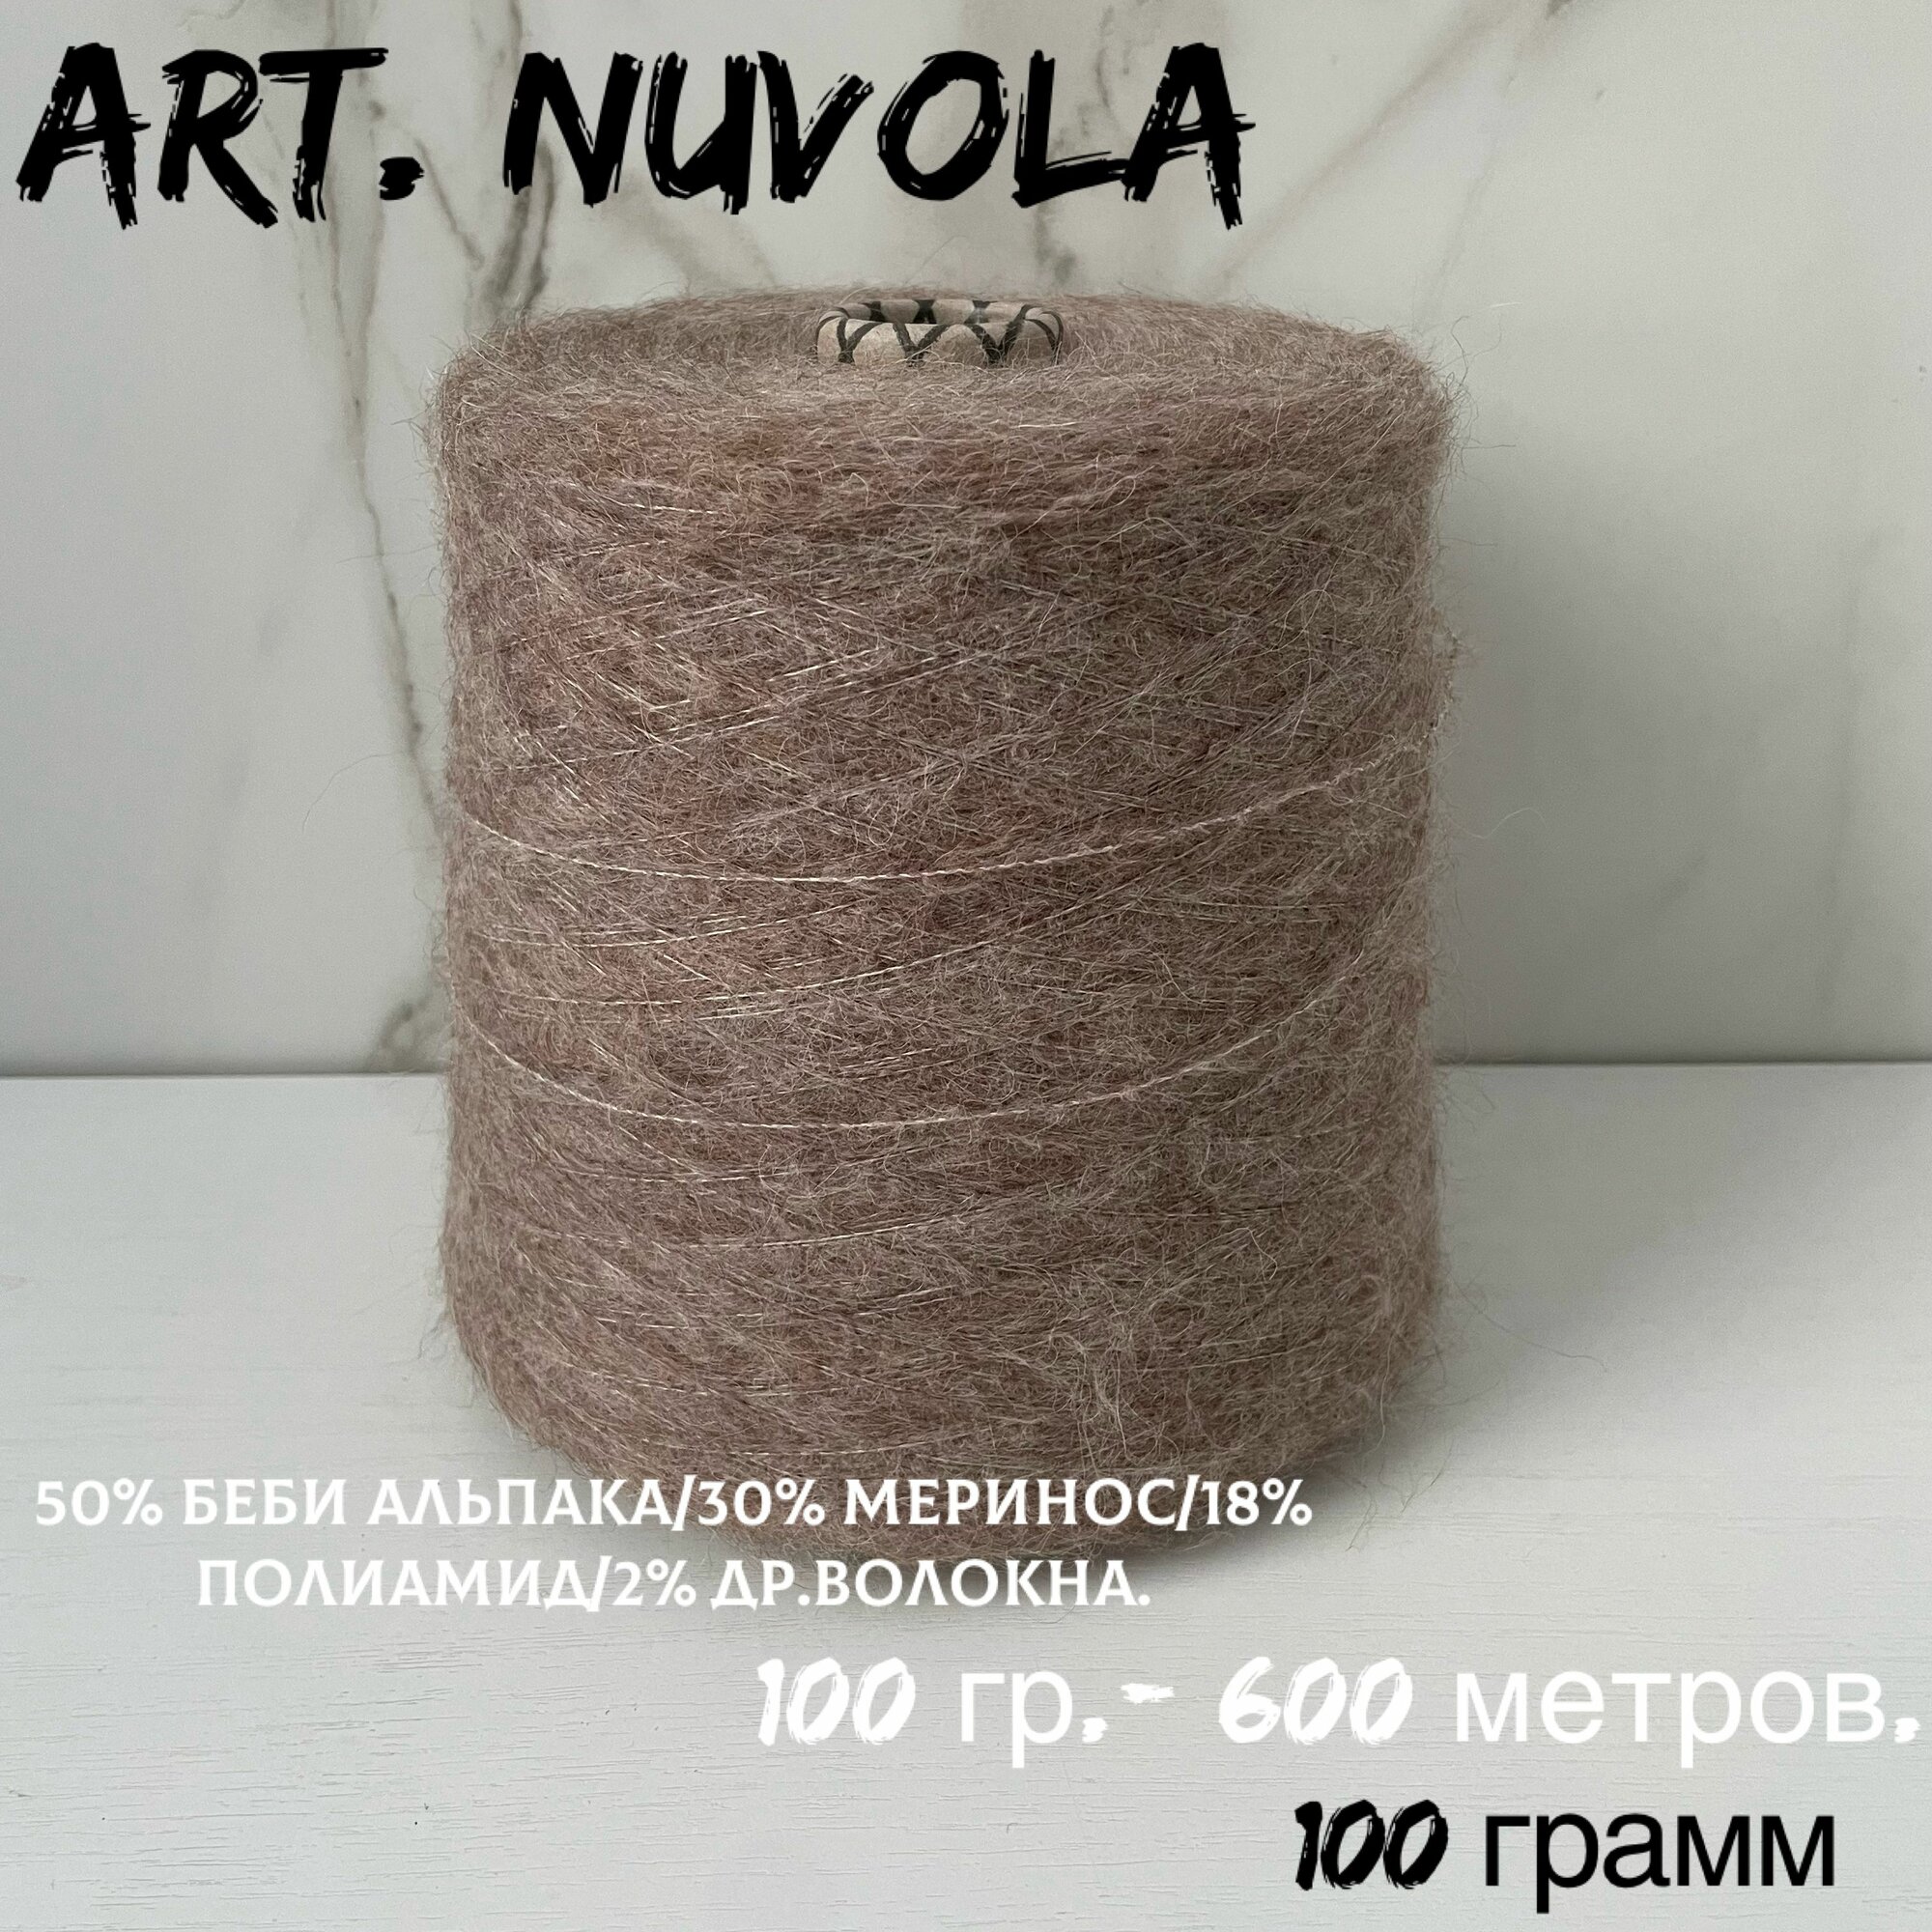 Итальянская бобинная пряжа для вязания art. NUVOLA беби альпака/меринос, 131 грамм